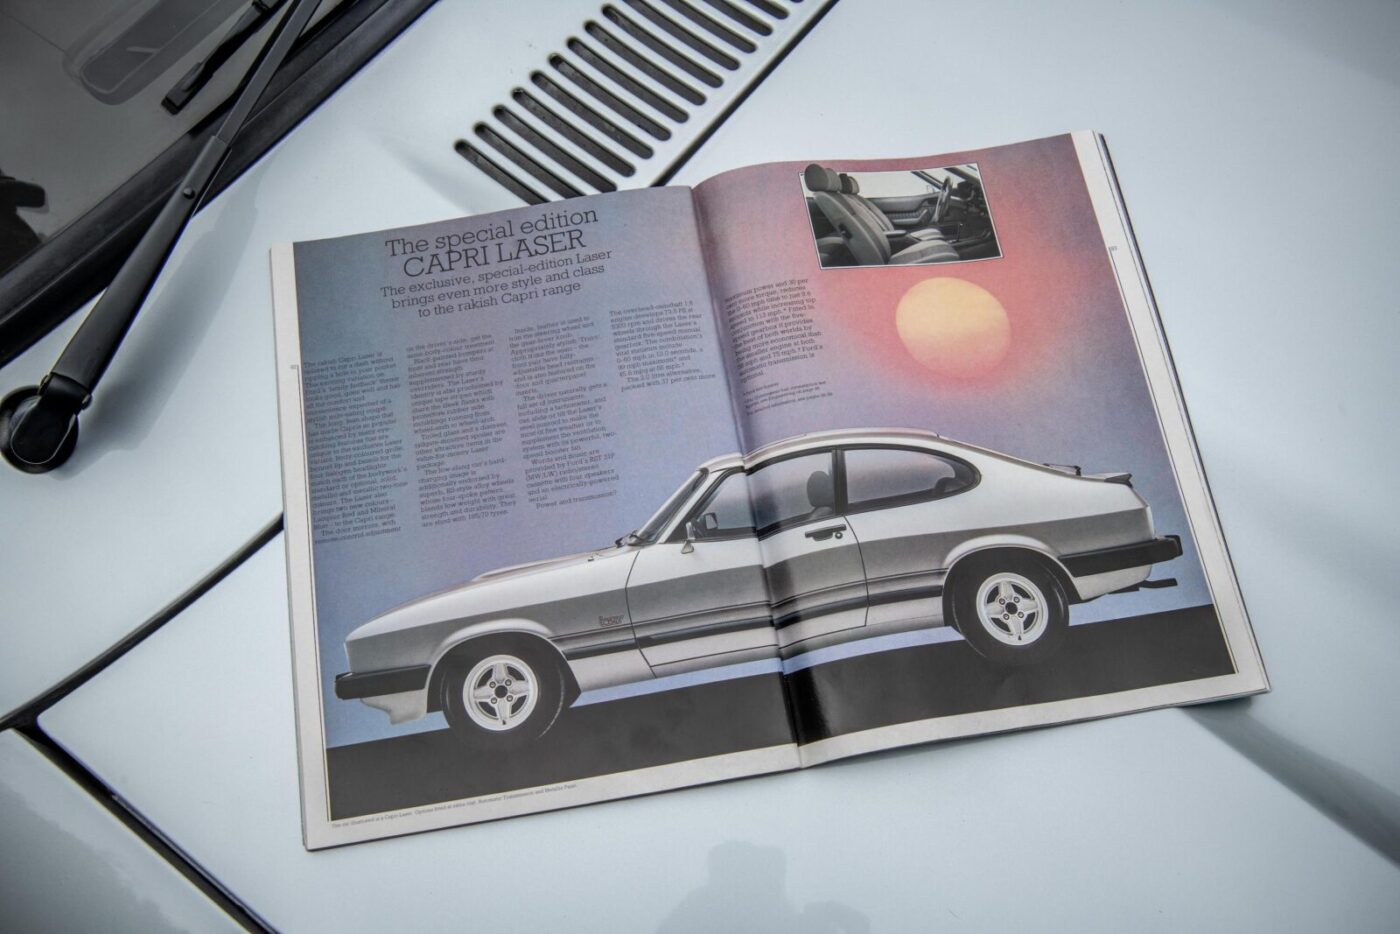 Ford brochure Capri Laser